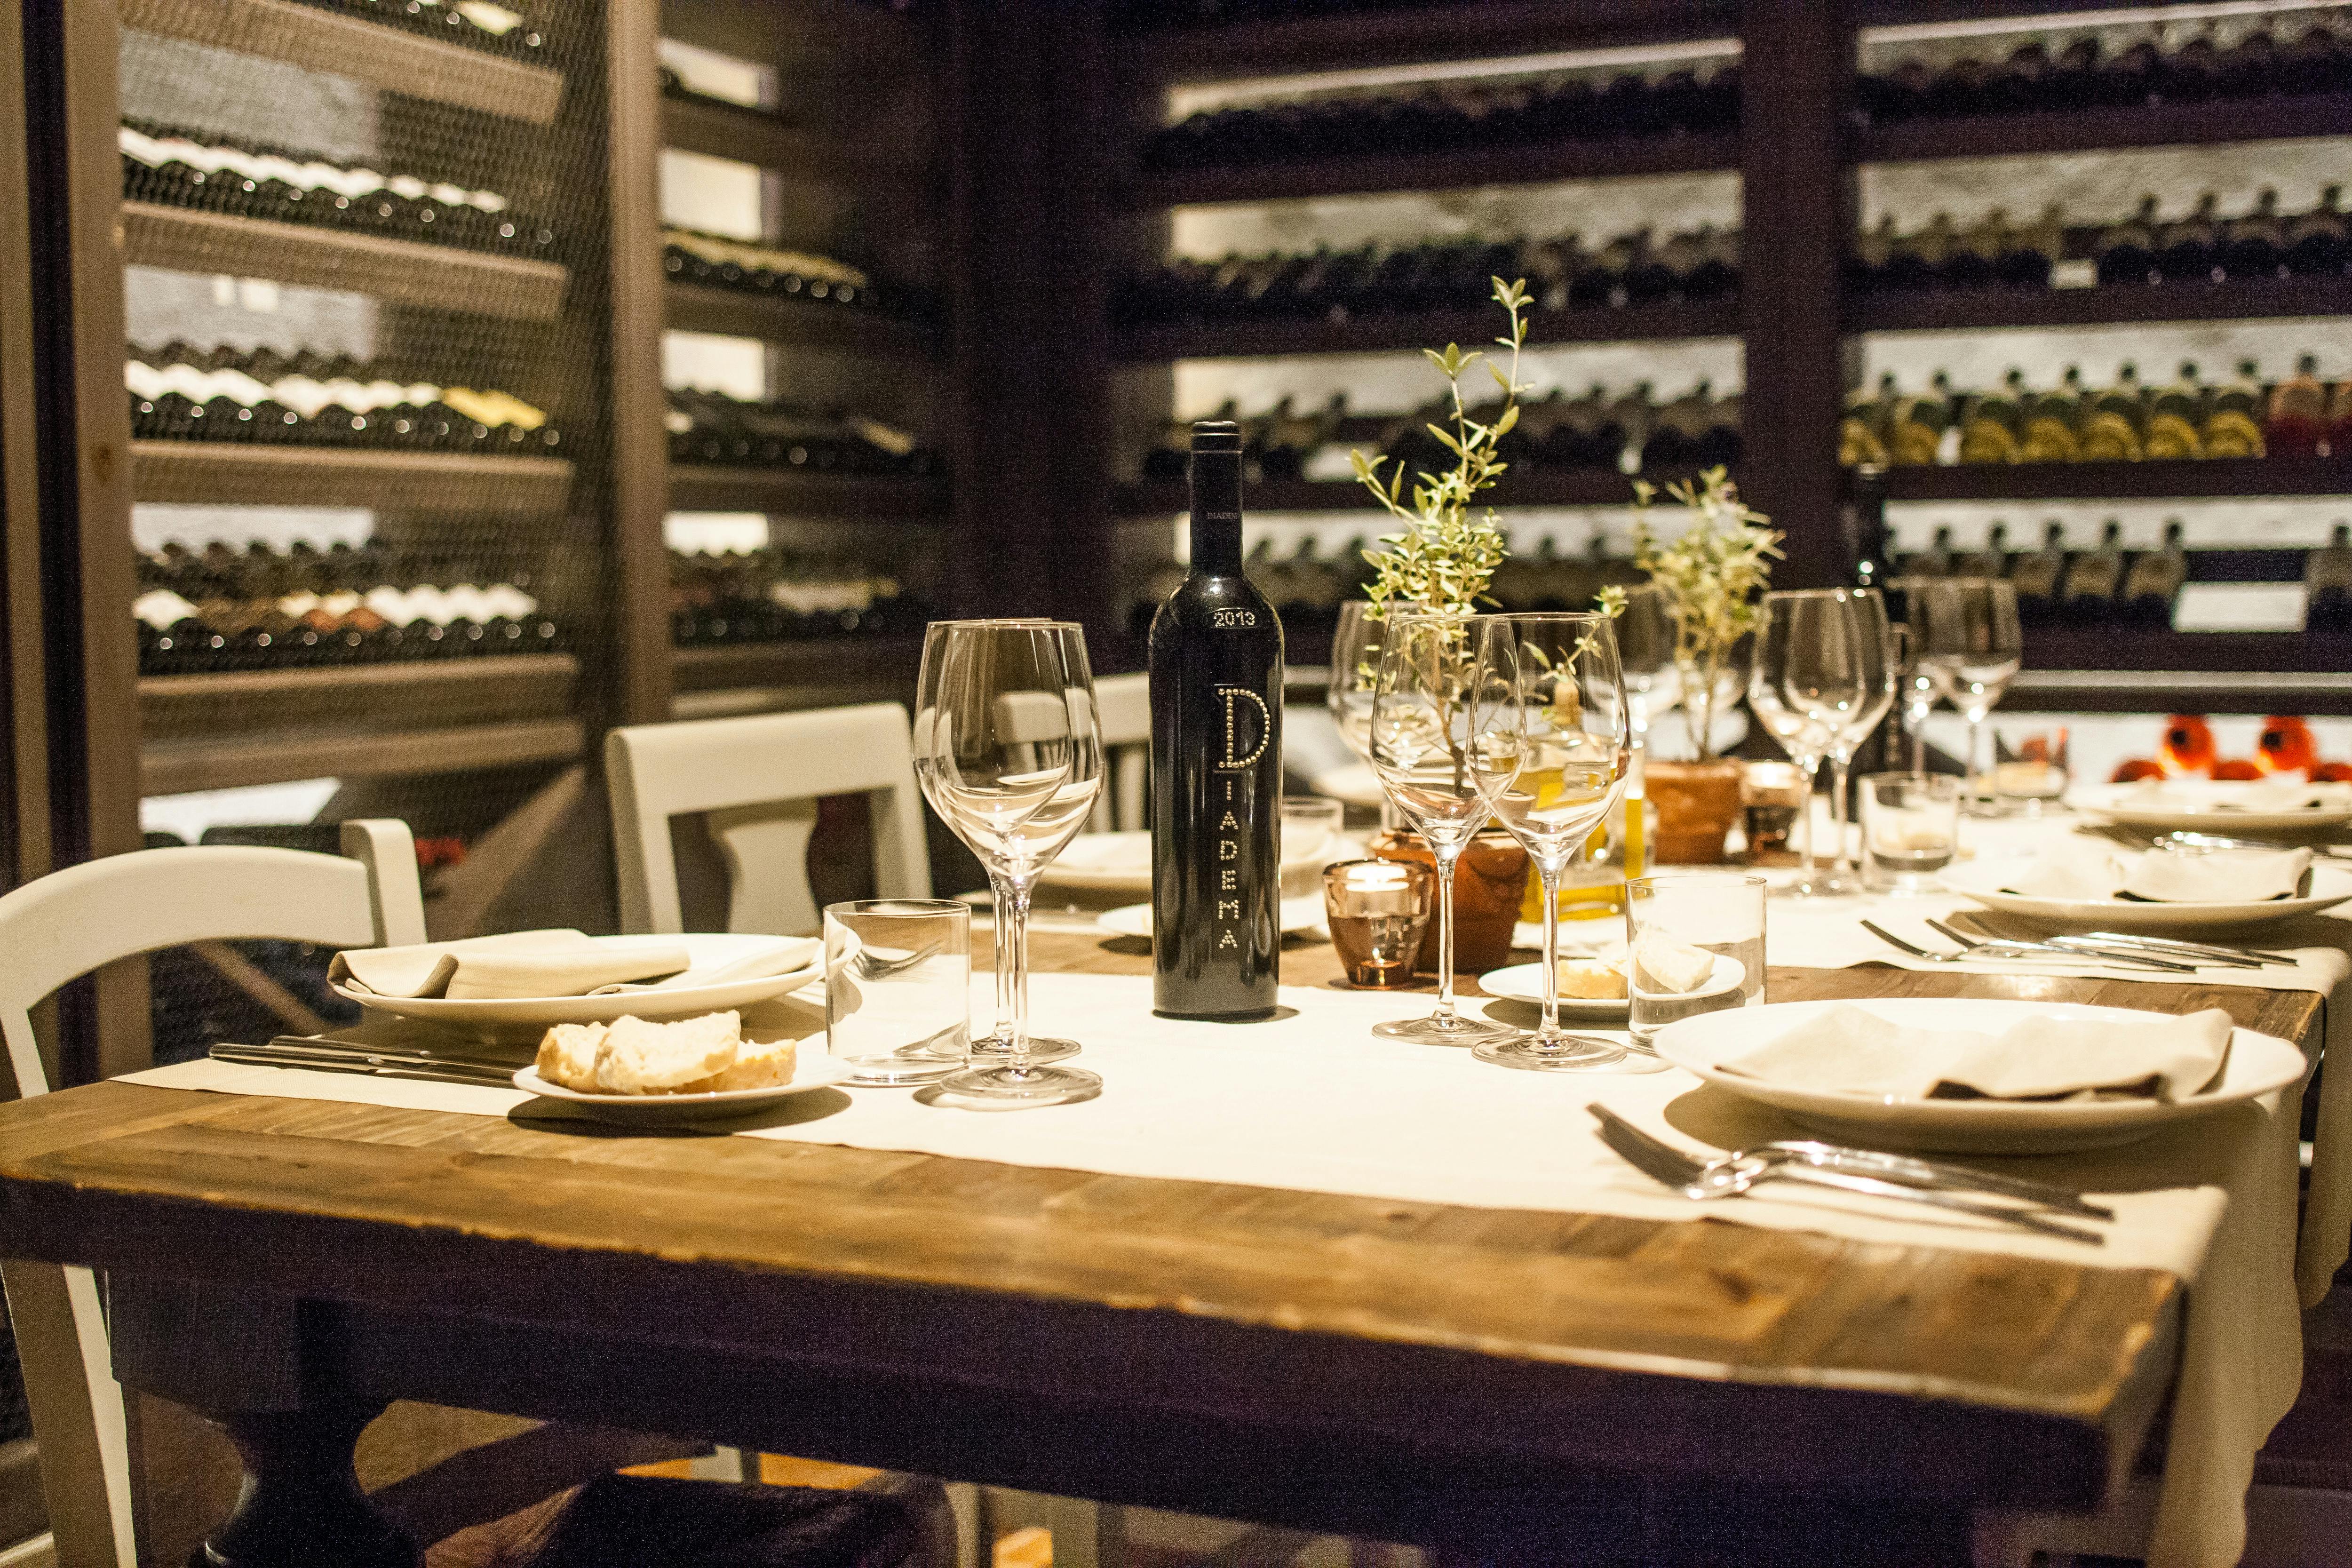 Esperienza di vinificazione e cena gourmet presso una cantina vinicola toscana